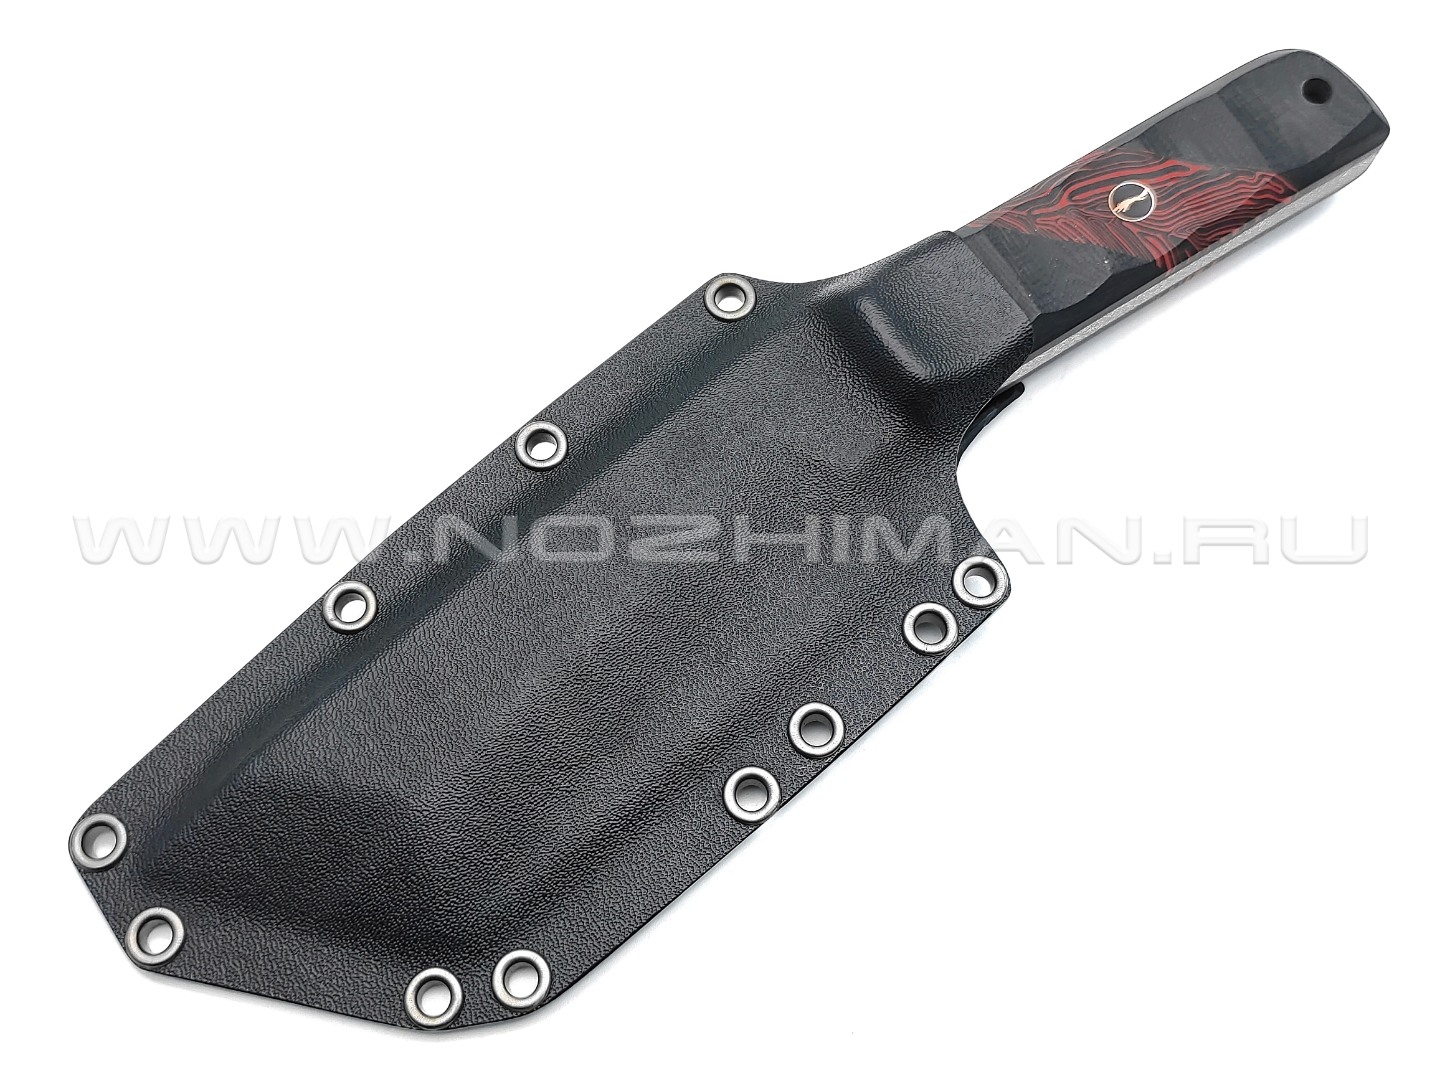 Волчий Век нож НДК 17 сталь PGK WA, рукоять G10 black & red